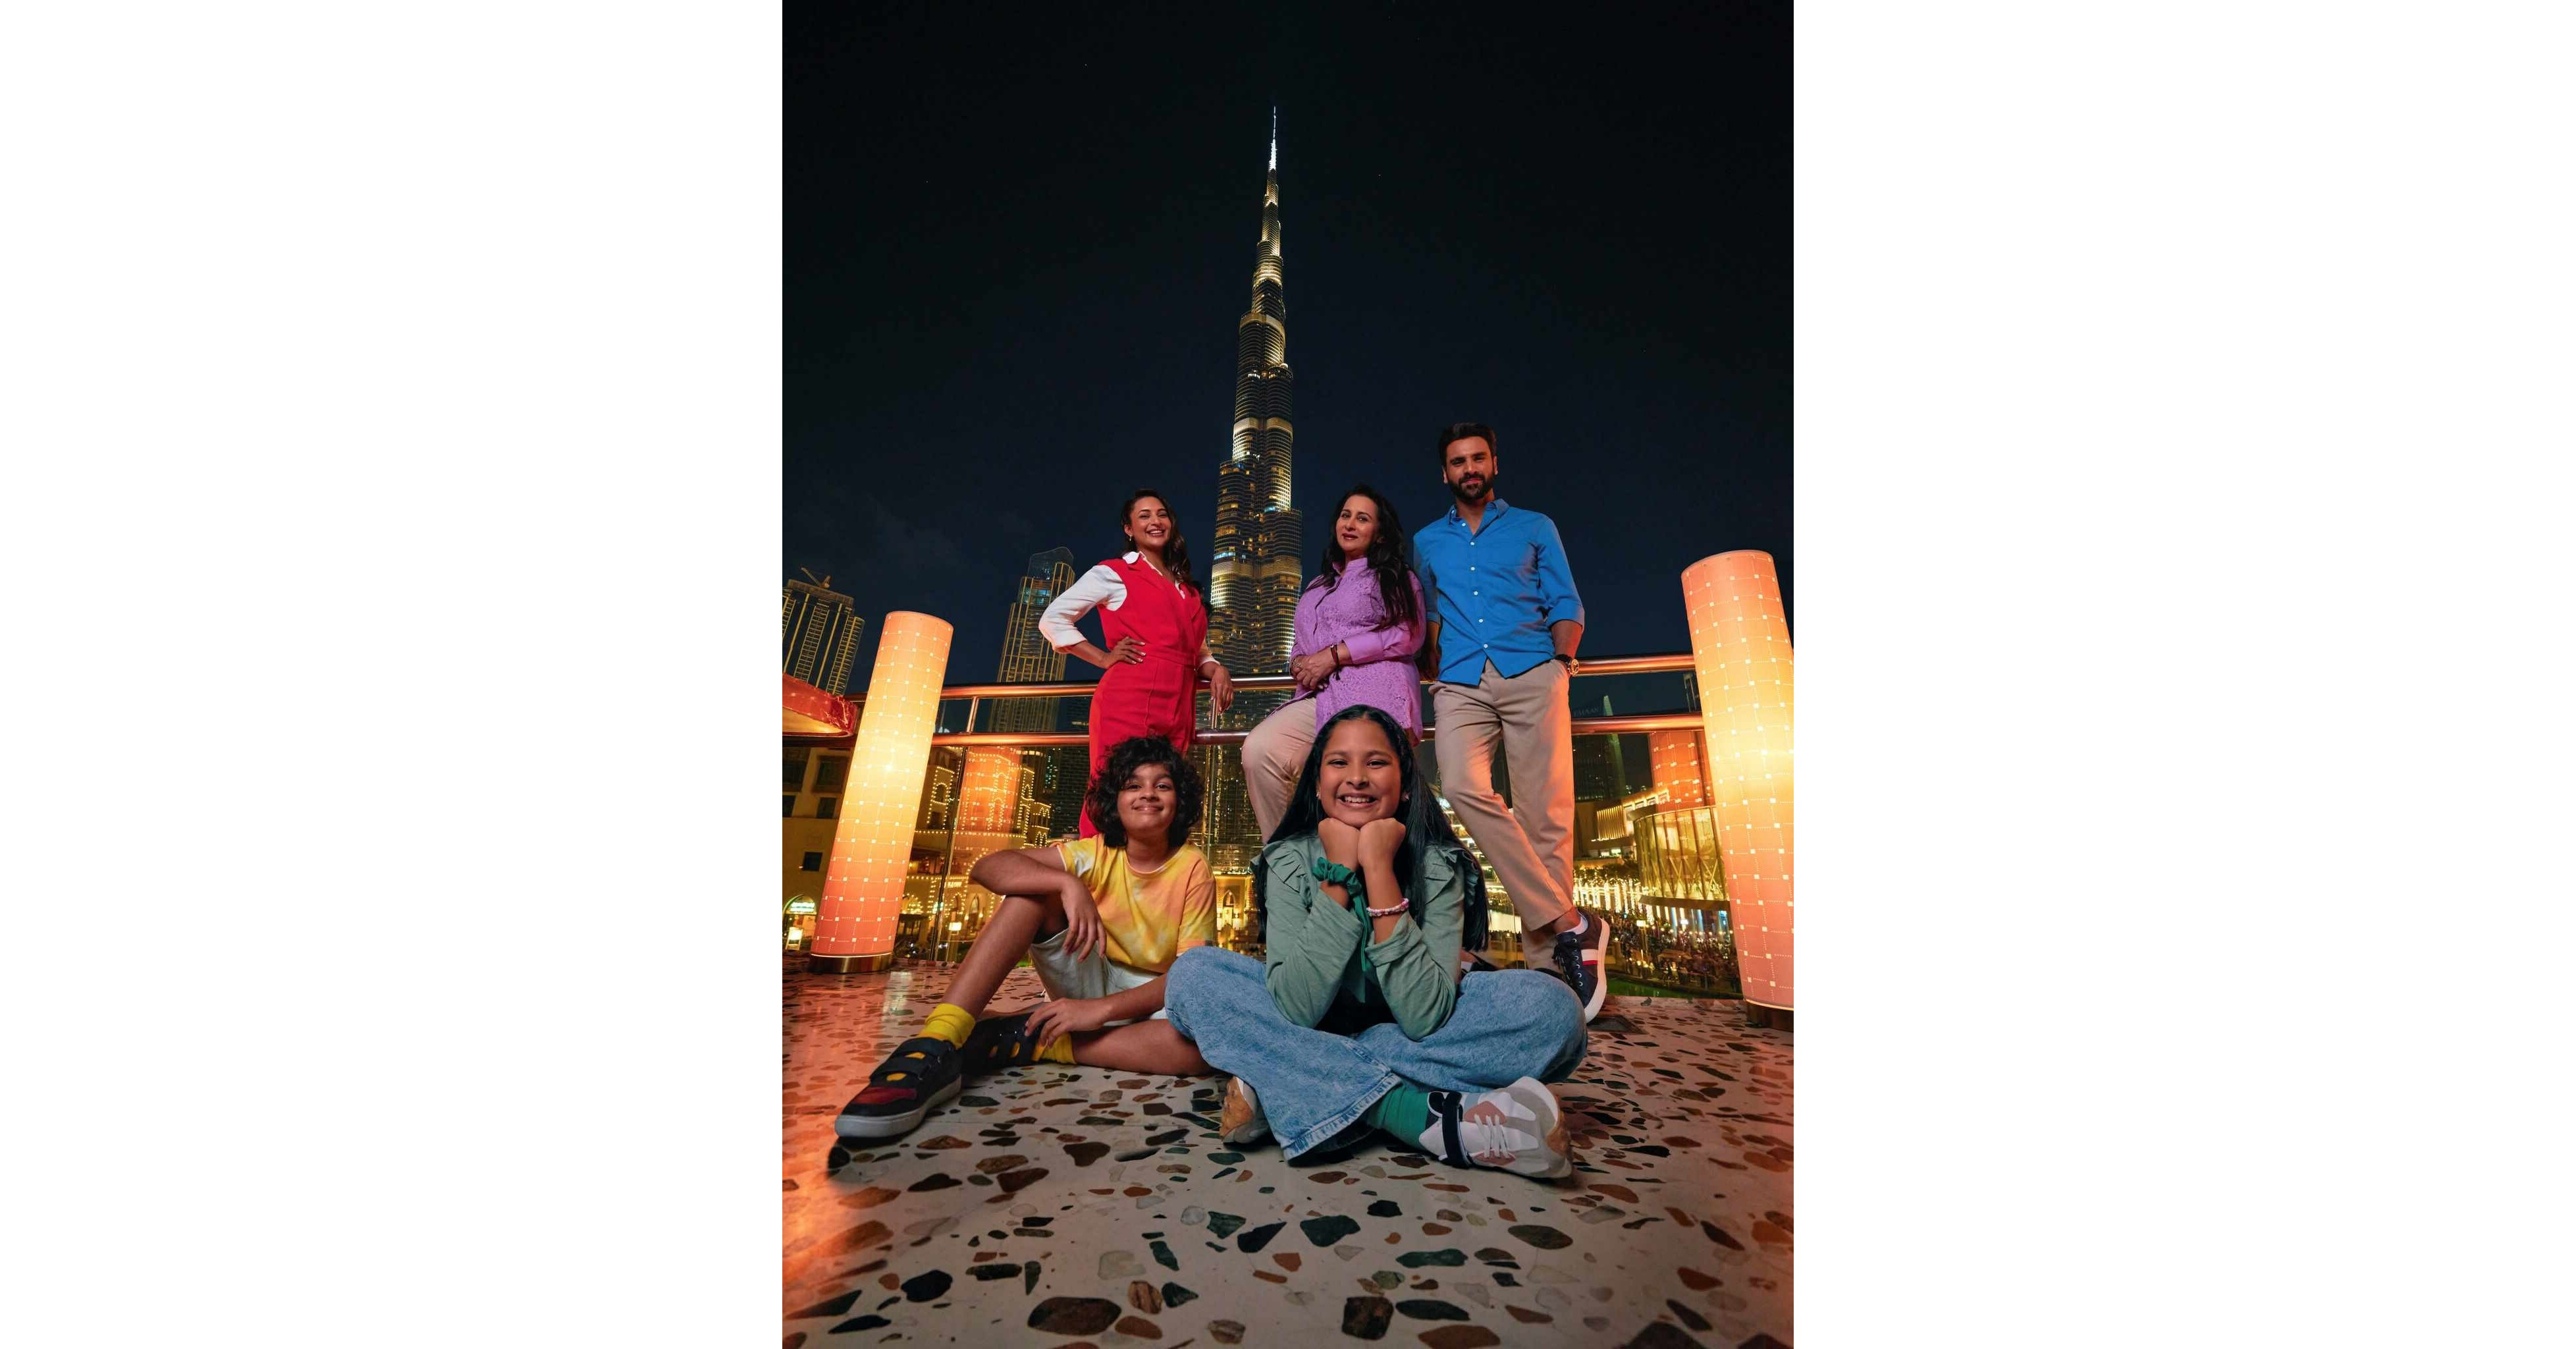 تدعو أحدث حملة أطلقتها اقتصادية وسياحية دبي للسوق الهندية الزوار لقضاء عطلة صيفية سريعة